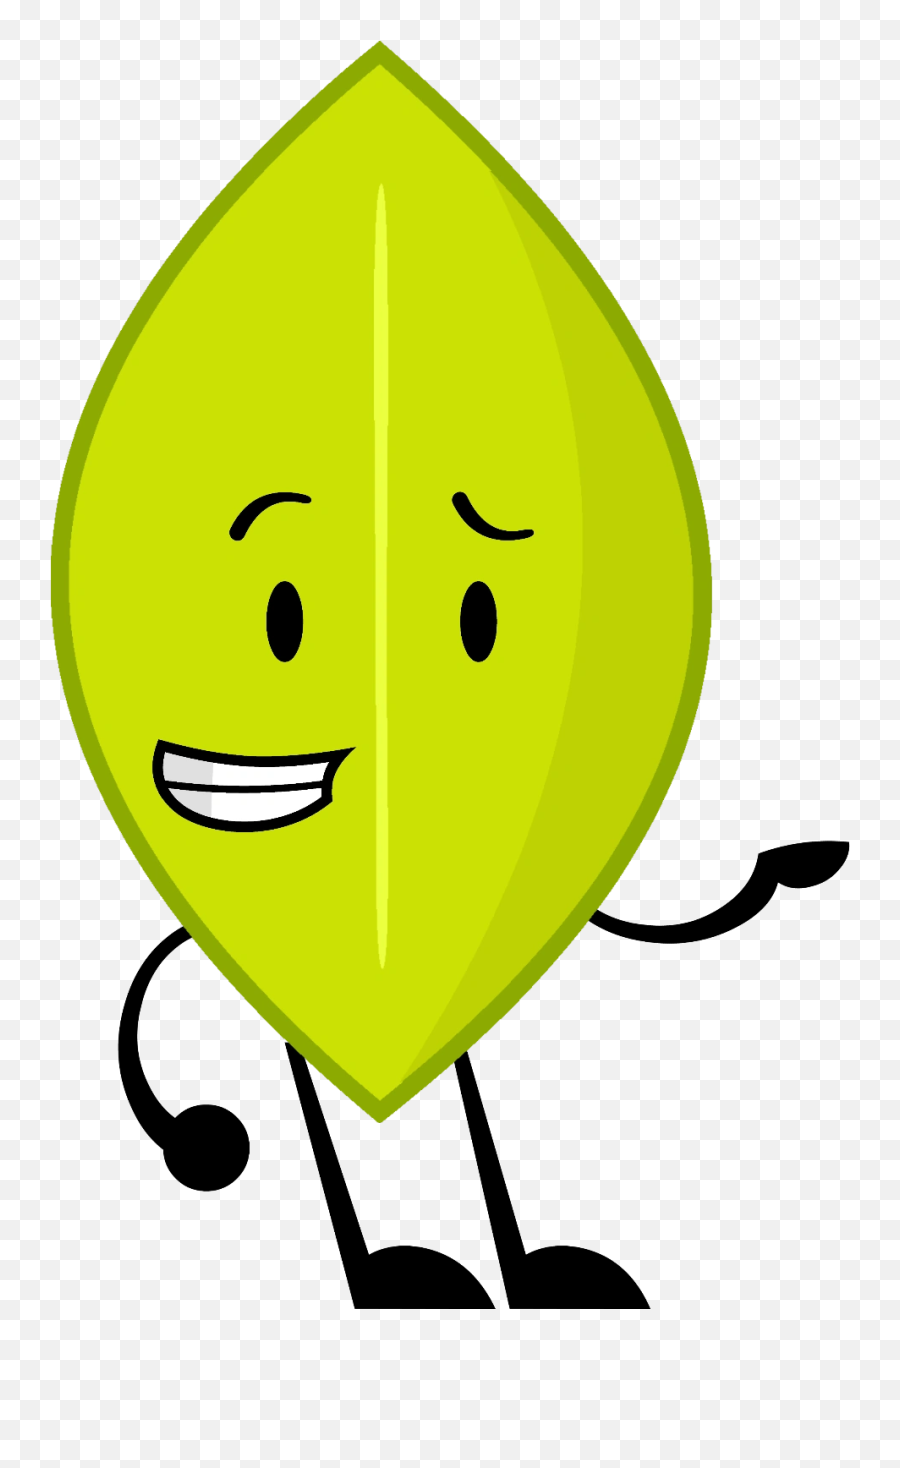 Leaf - Object Oppose Leaf Emoji,Leaf Emoticon